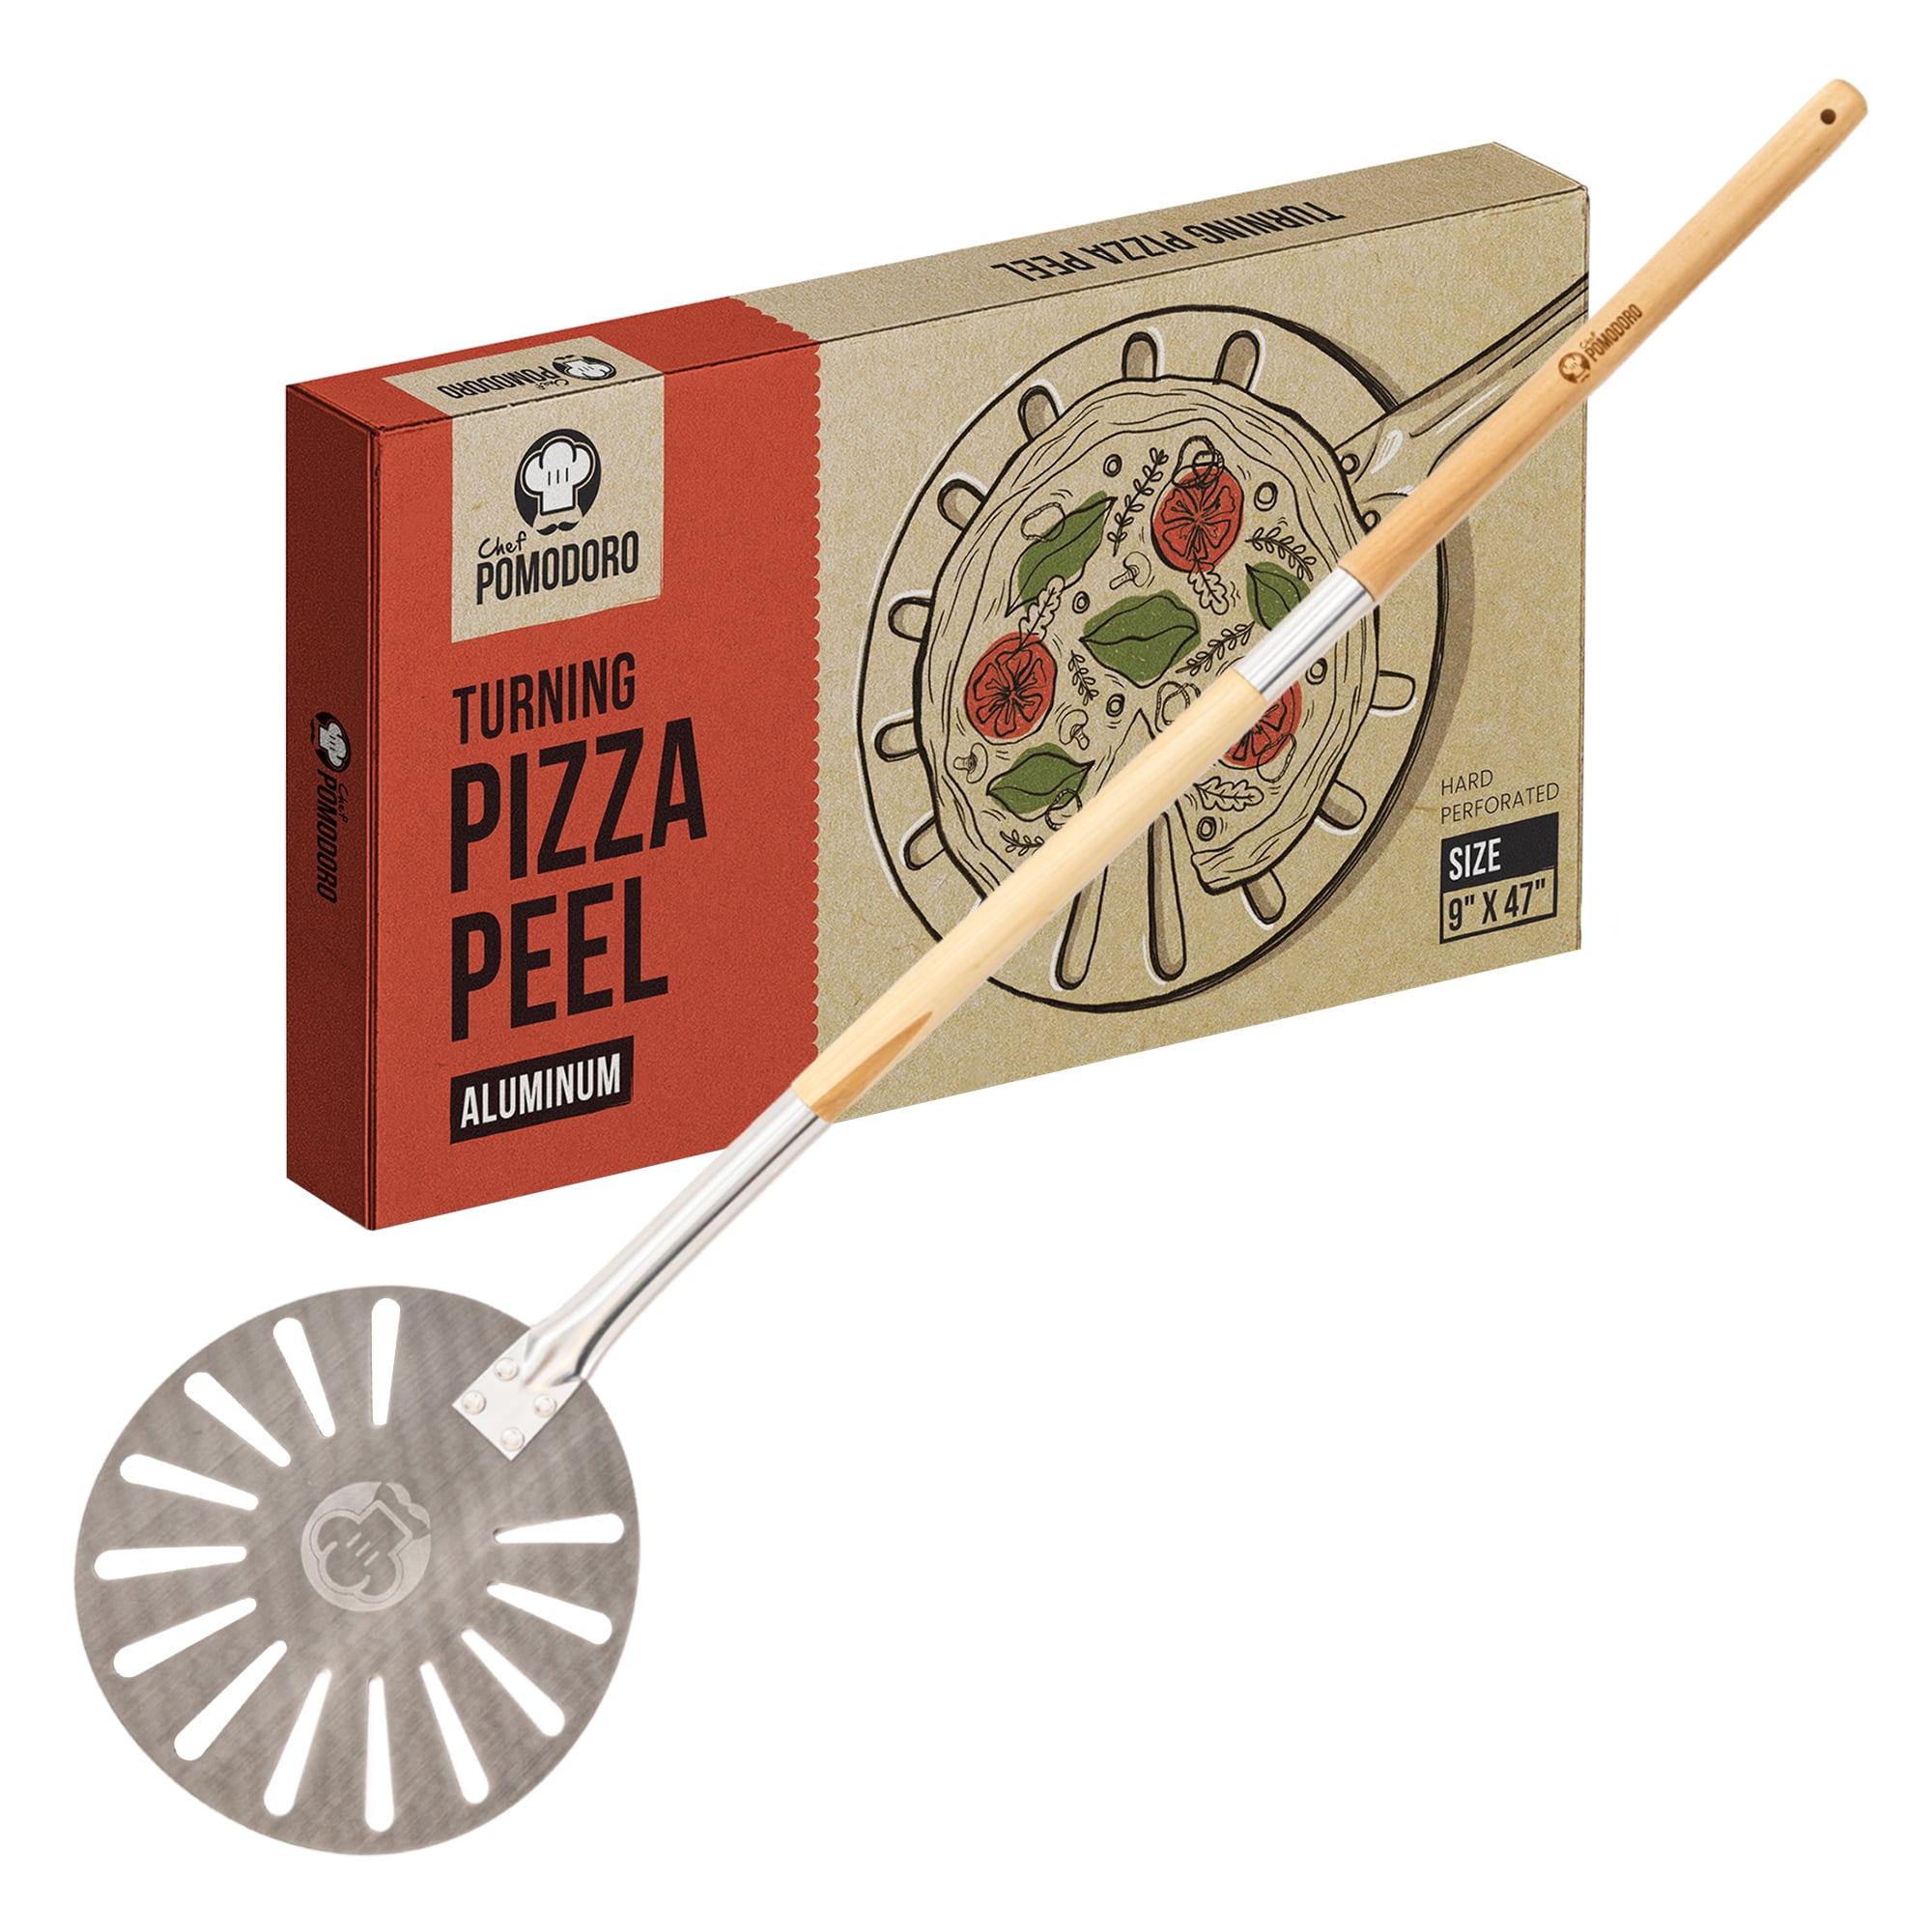 Aluminum 9-Inch Turning Pizza Peel